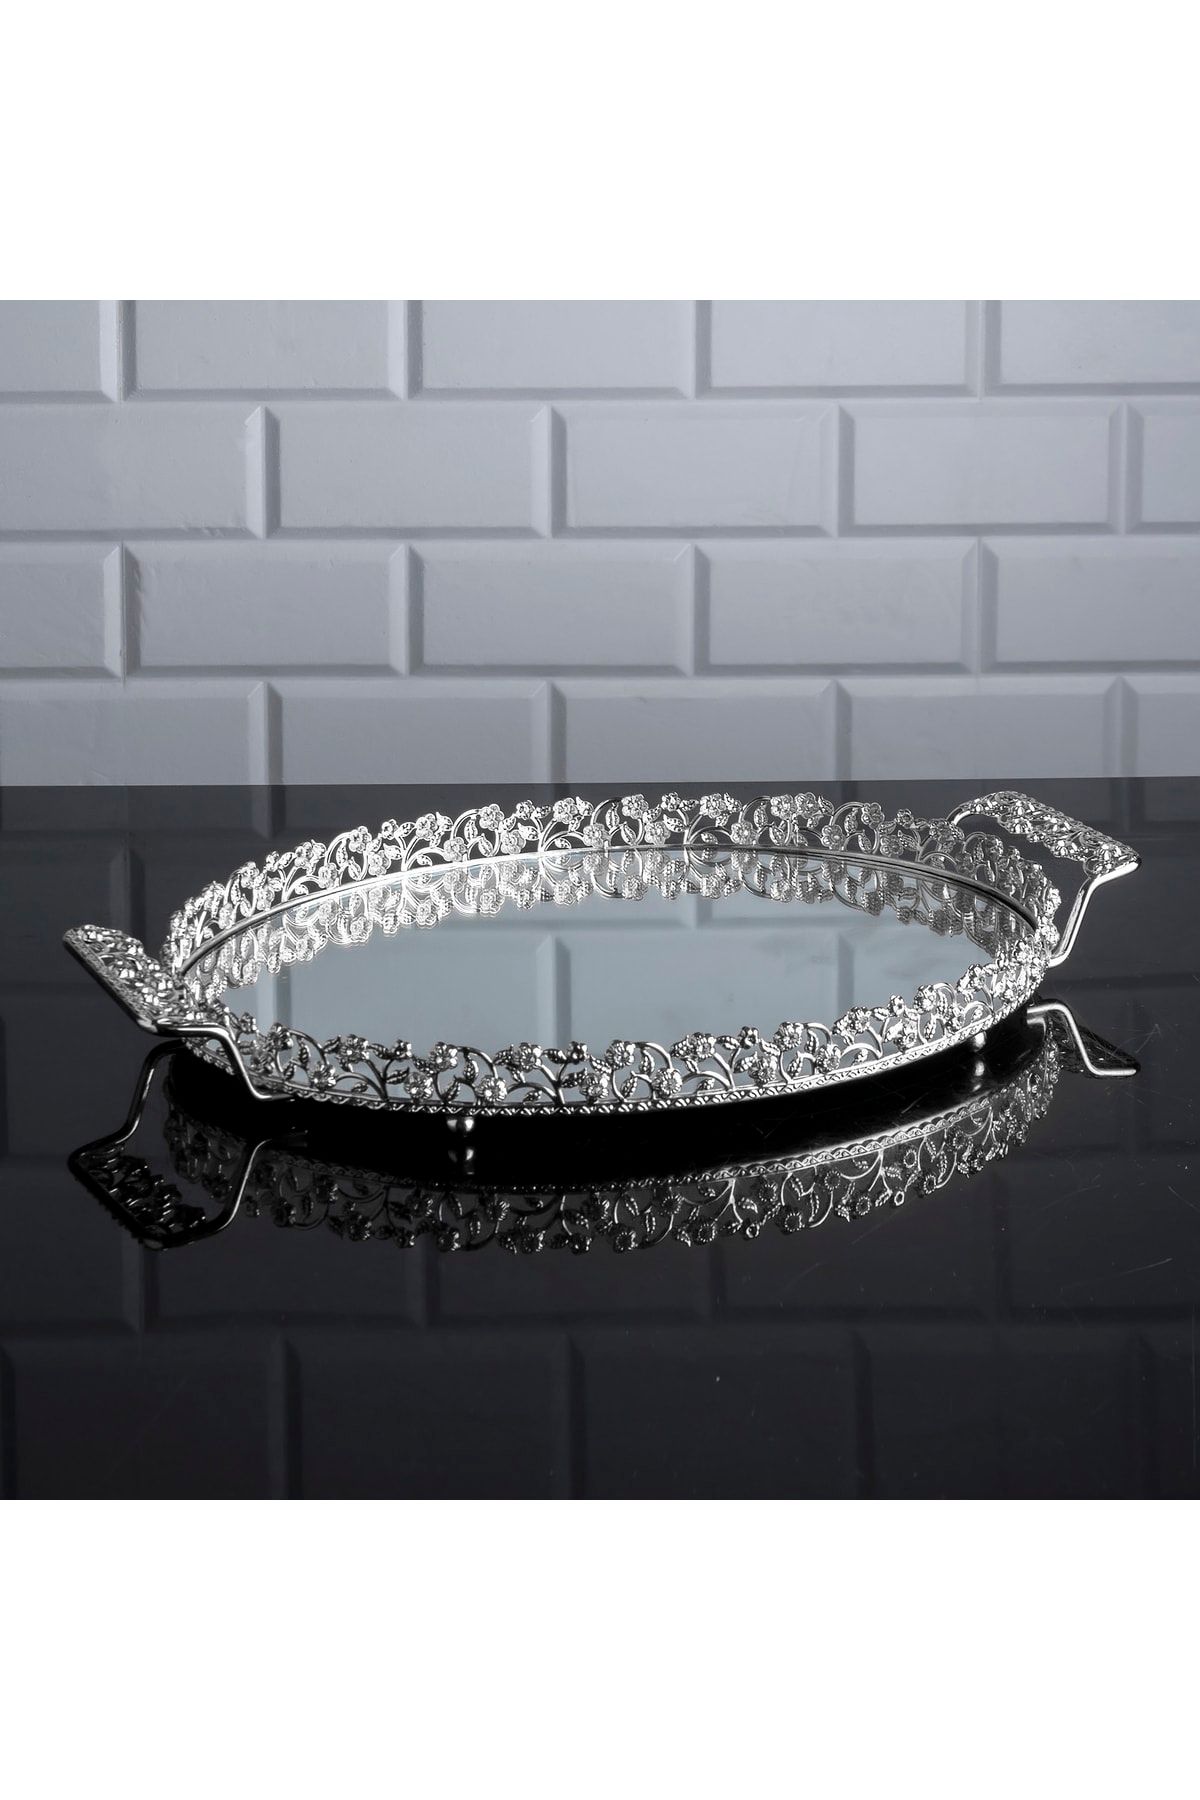 Zeyve Home Elmas Oval Orta Tepsi Aynalı Metal Kulplu Çay Kahve Sunumluk Çikolata Tepsisi Gümüş